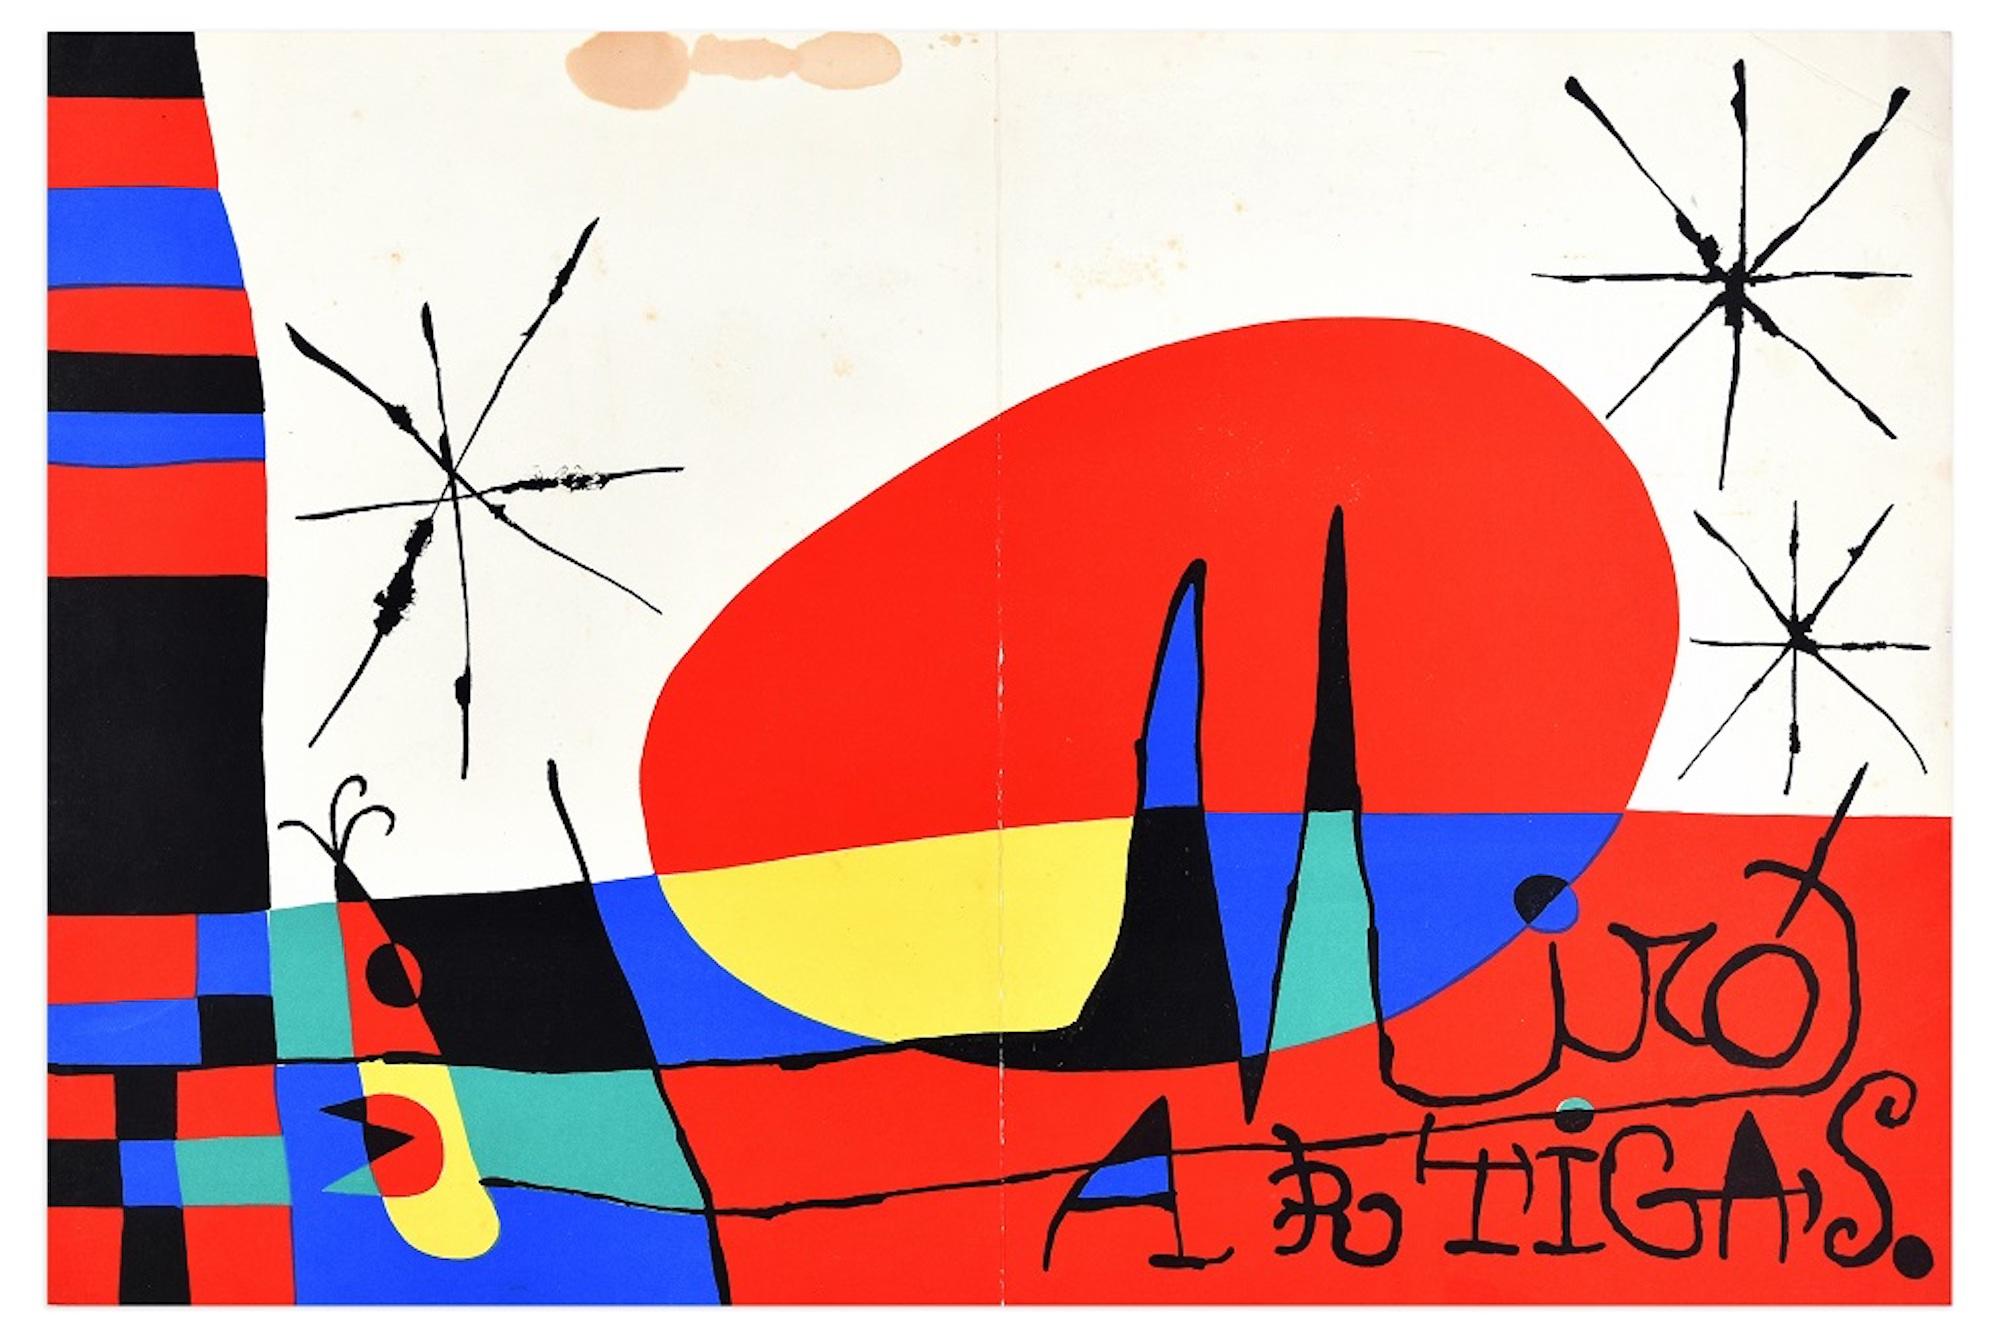 (after) Joan Miró Abstract Print - Terre de grand feu, Mirò – Artigas - Original Lithograph by Joan Mirò - 1956